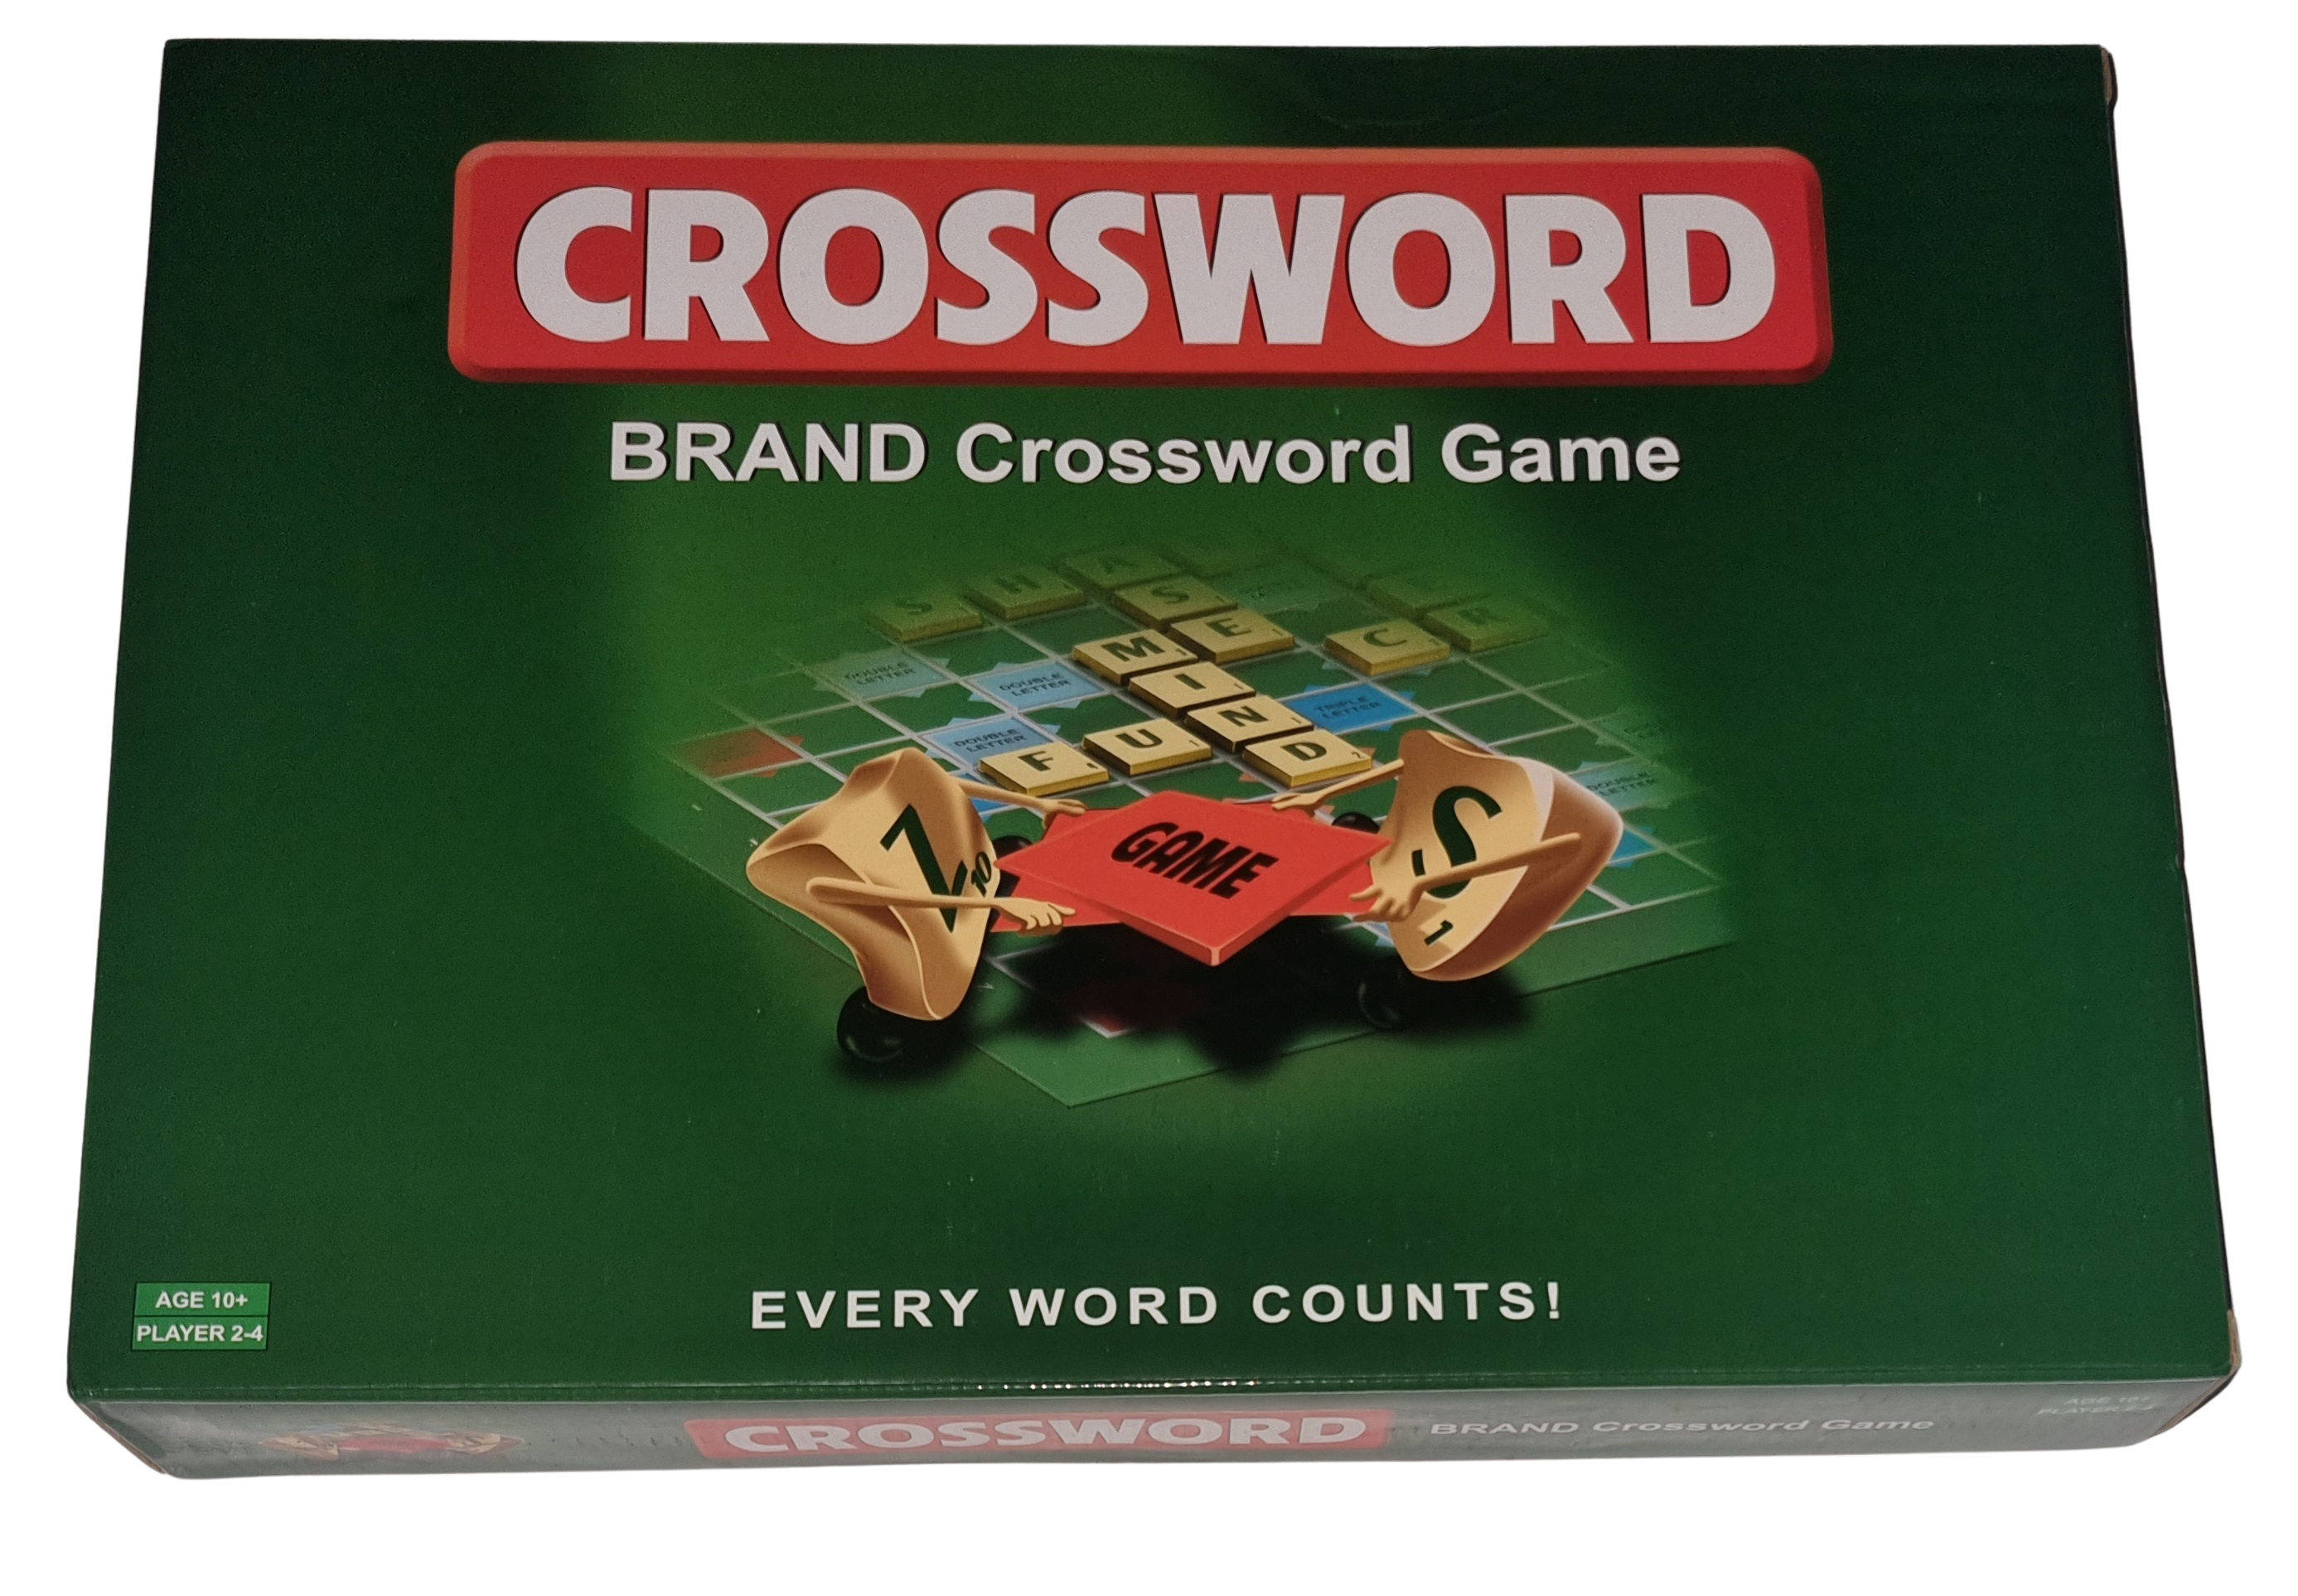 Crossword Brand Crossword Game